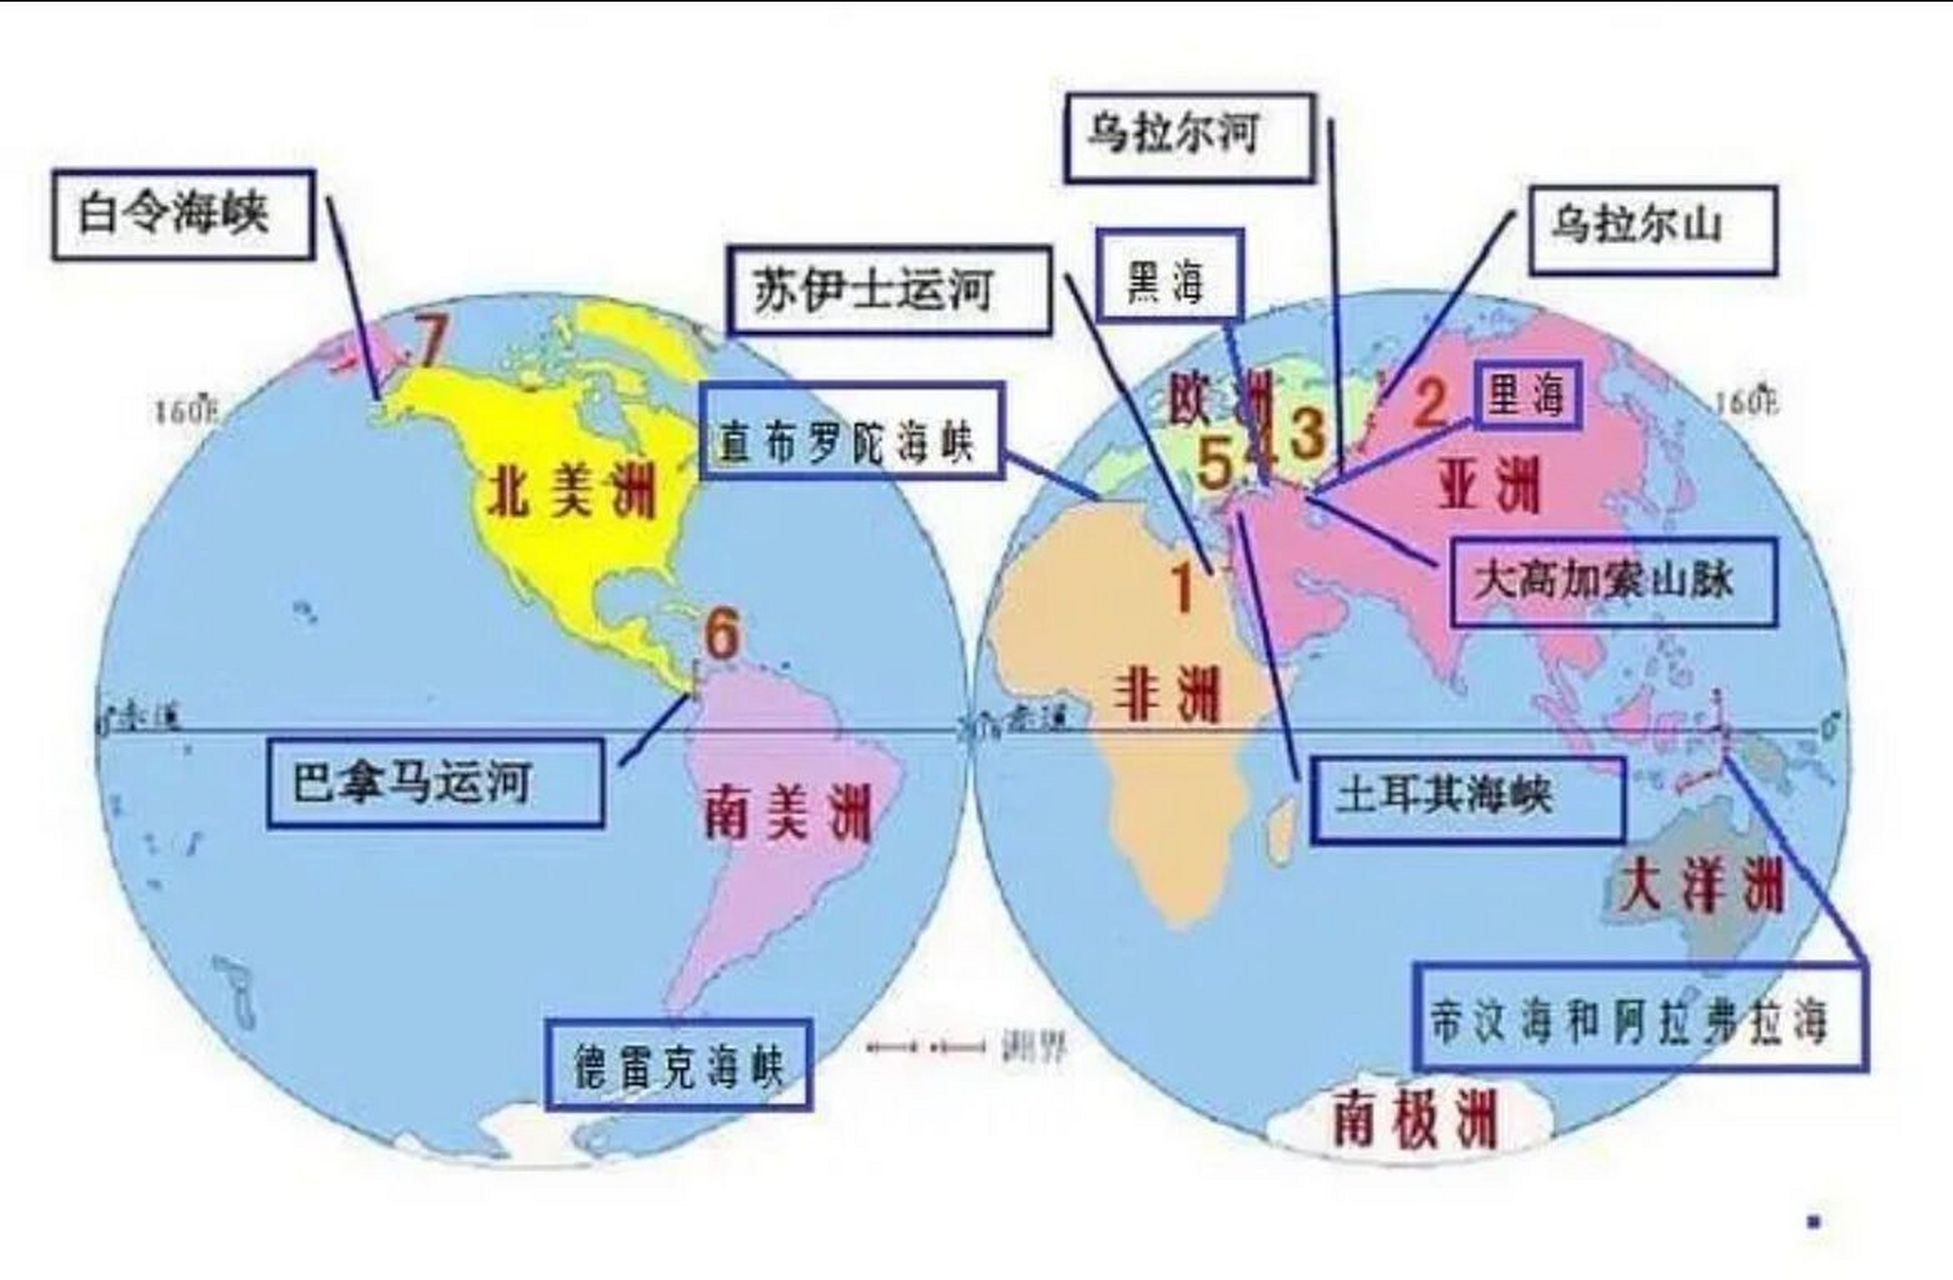 3亚洲与北美洲:白令海峡 4欧洲与非洲:直布罗陀海峡,地中海